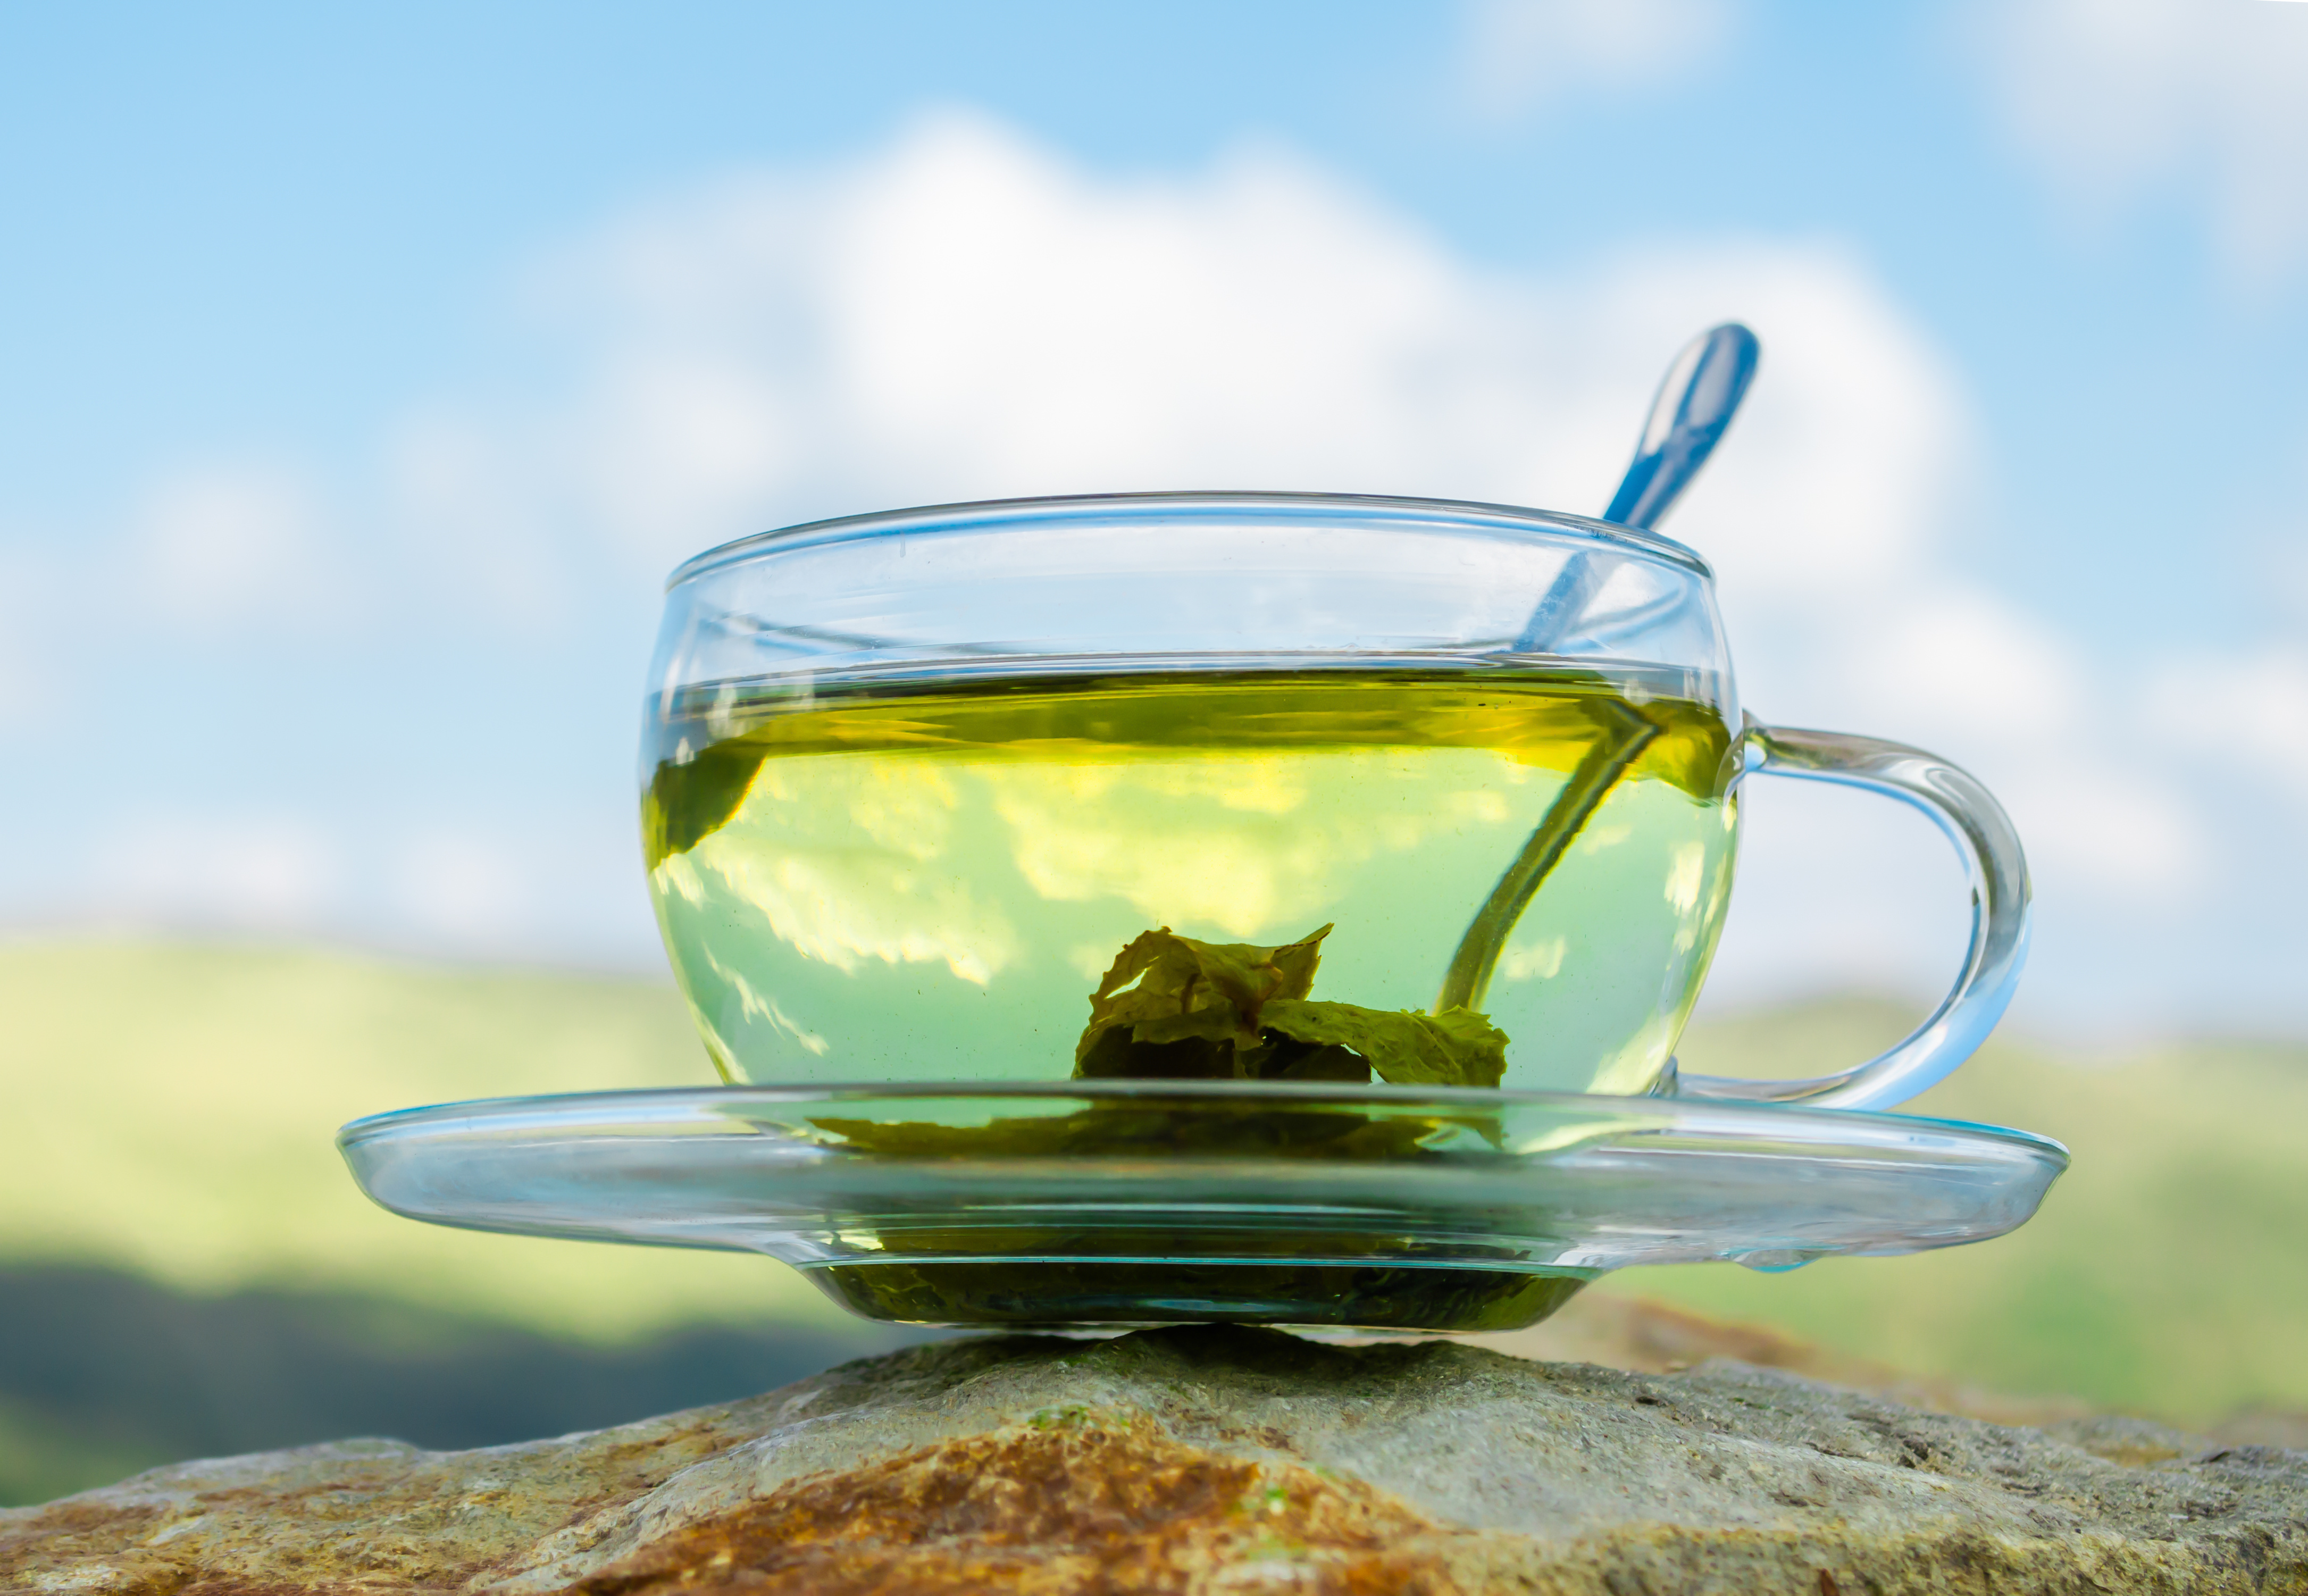 CE SPUN STUDIILE despre consumul de ceai